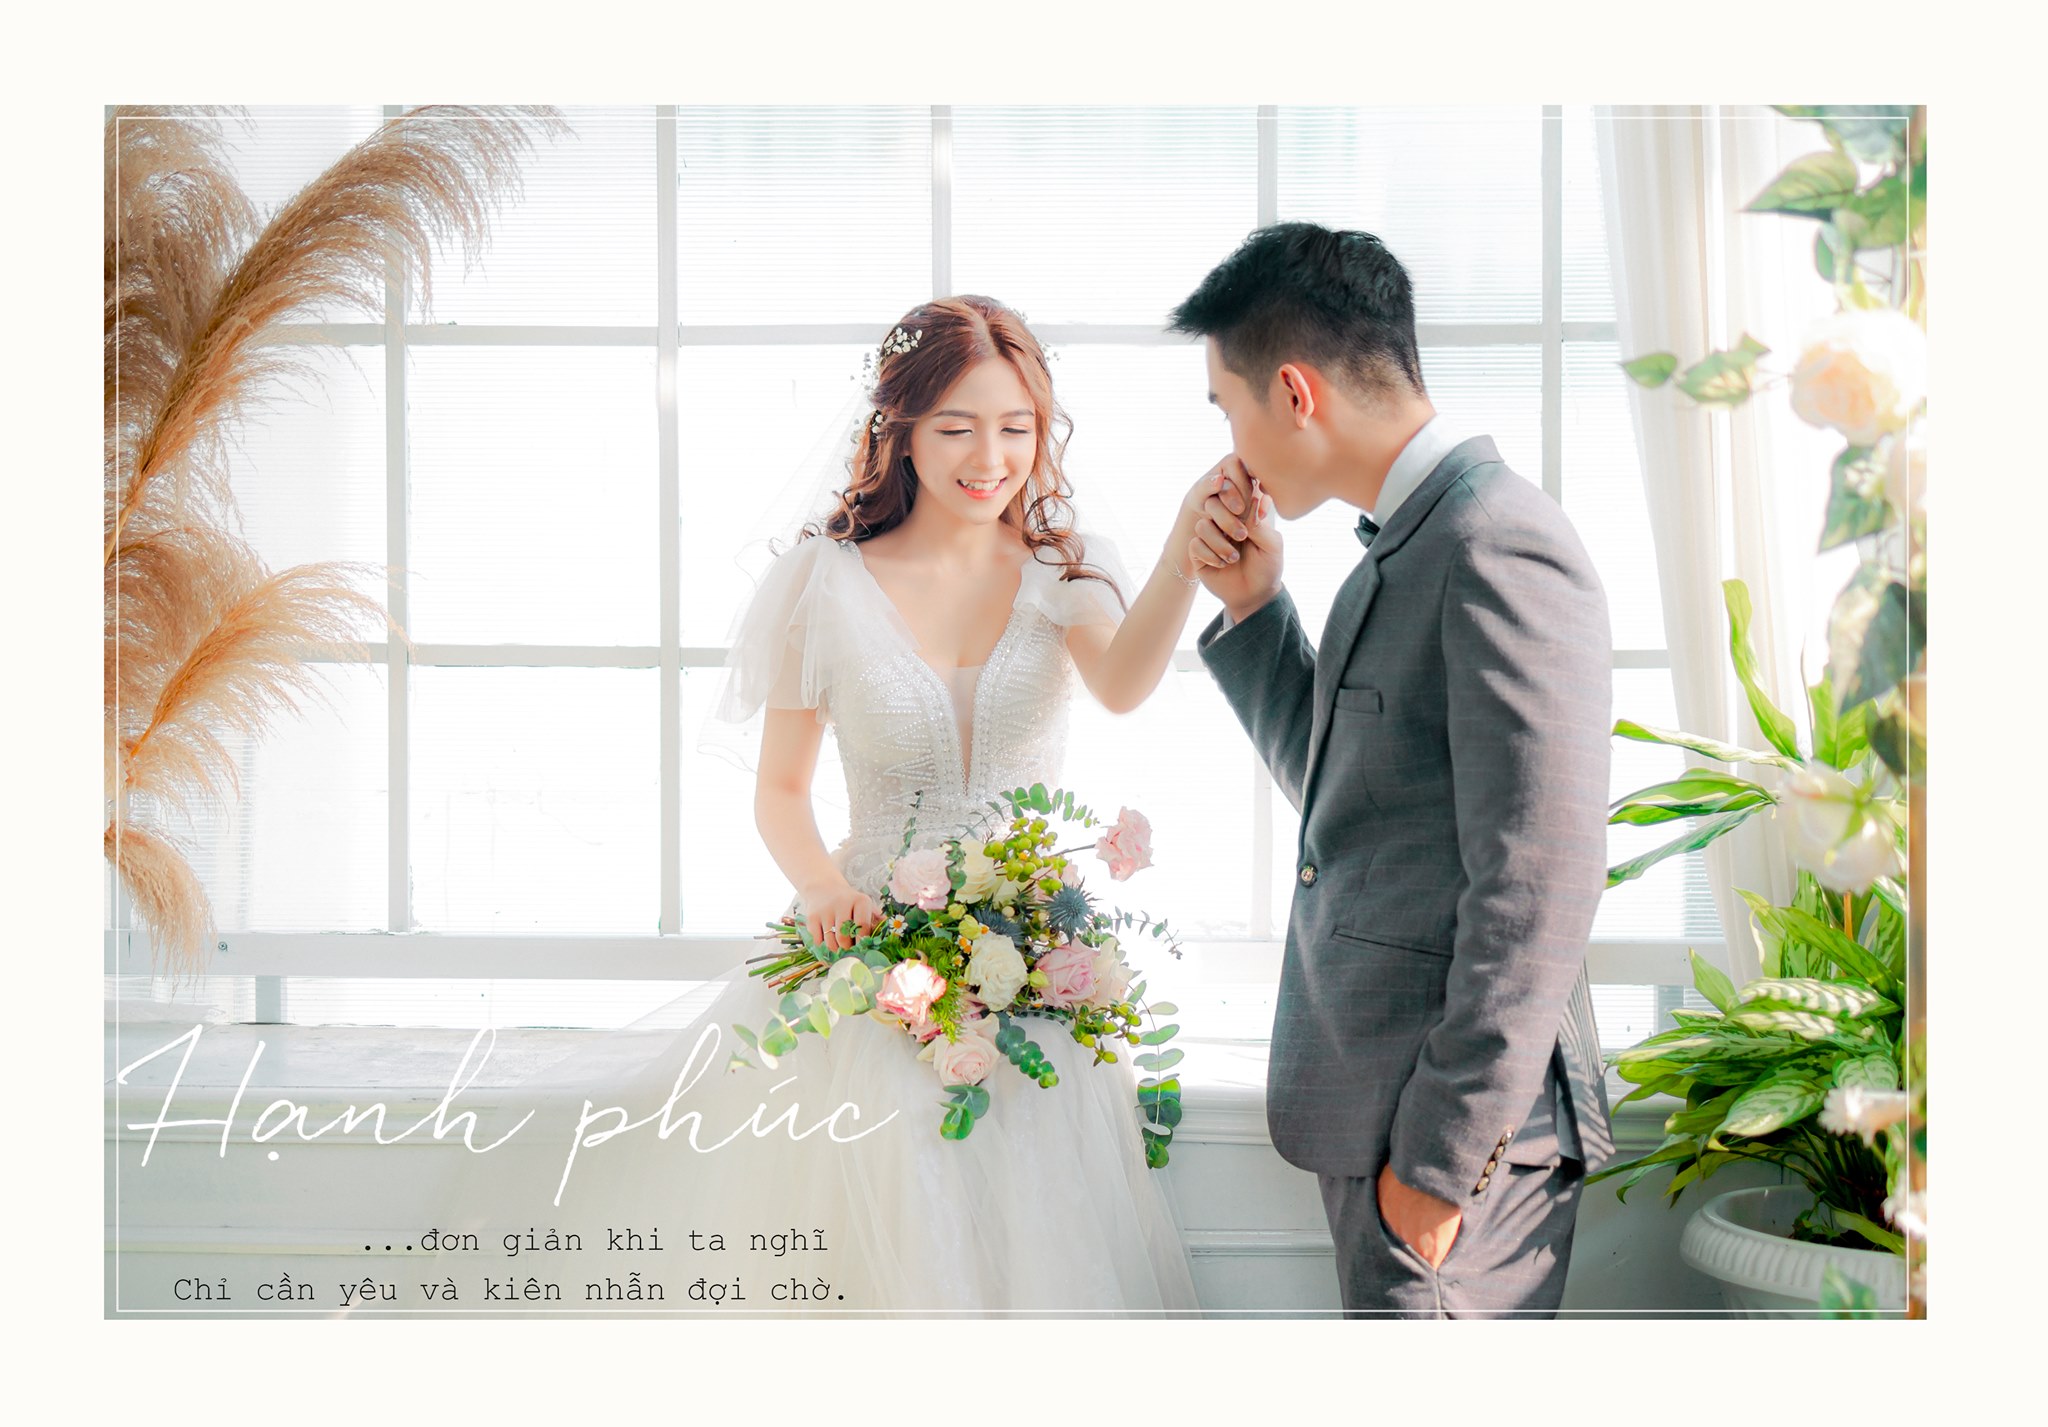 Studio chụp ảnh cưới Hàn Quốc Nha Trang sẽ là địa điểm lý tưởng cho các cặp đôi muốn lưu giữ những khoảnh khắc đẹp nhất của tình yêu. Với không gian thoáng đãng, nhân viên chuyên nghiệp và trang thiết bị hiện đại, bức ảnh cưới Hàn Quốc sẽ được tạo nên với chất lượng tuyệt vời nhất.